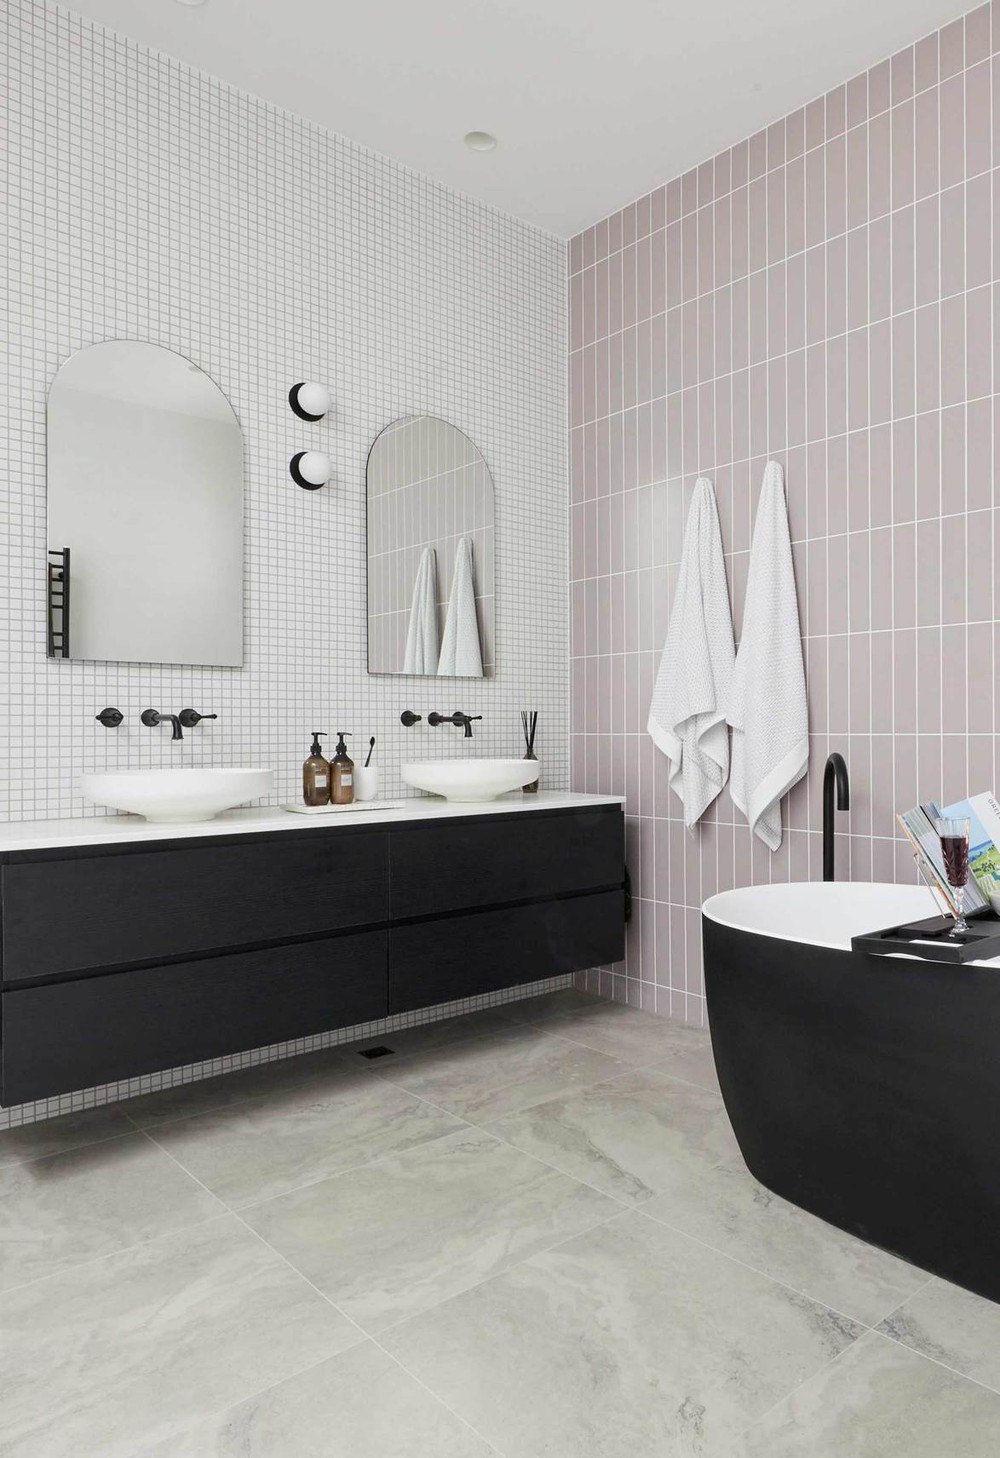 Tha hồ gom nhặt ý tưởng cho căn phòng tắm gia đình với những thiết kế ấn tượng - Ảnh 7.